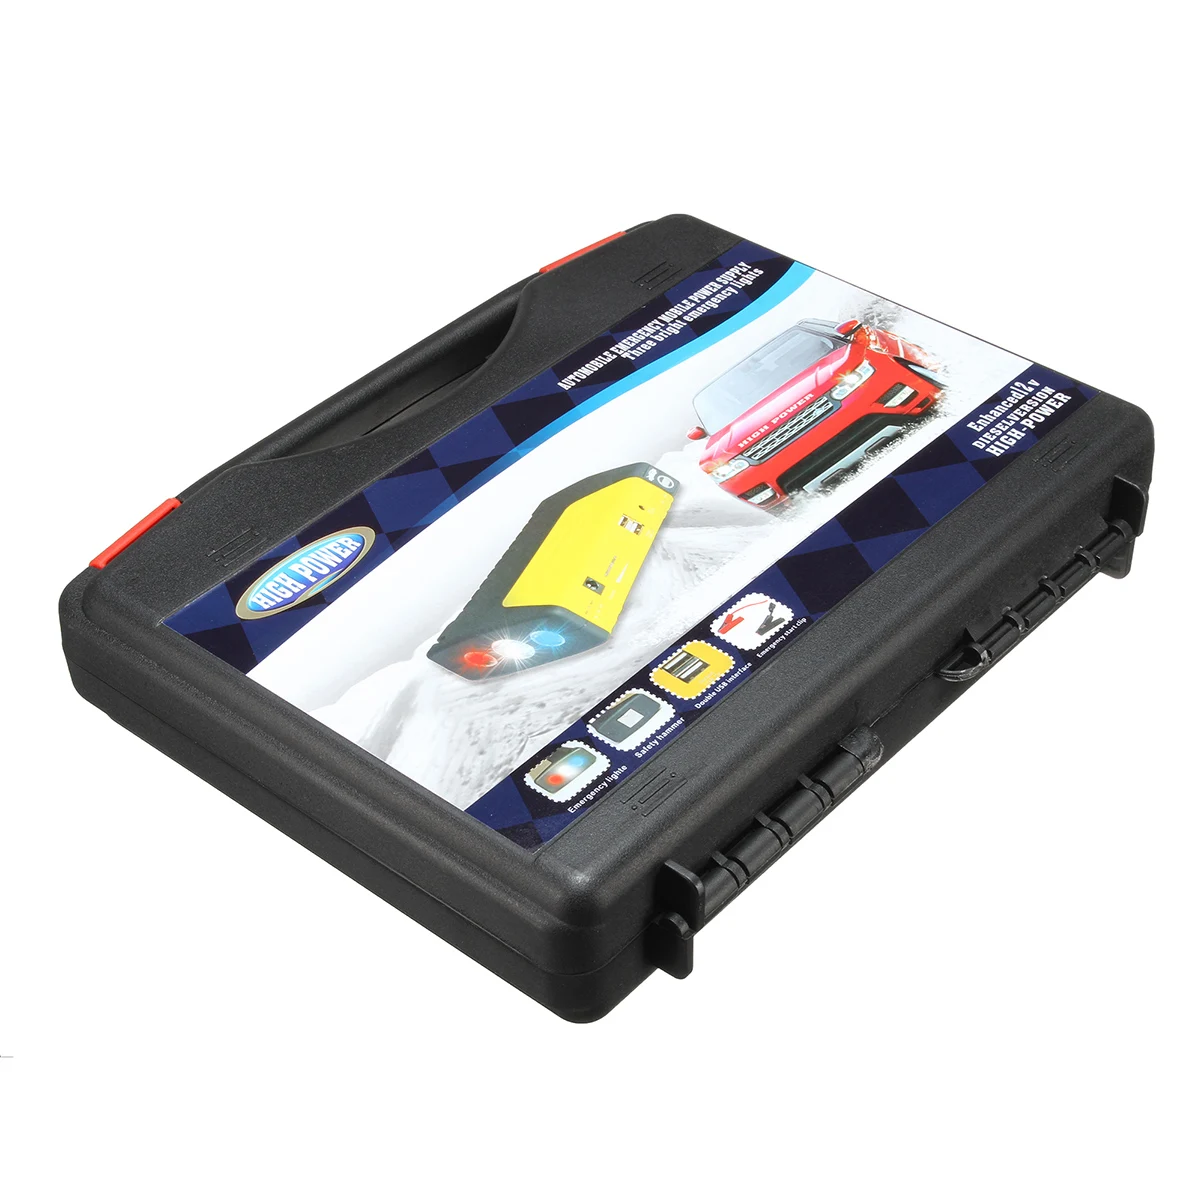 50800 мАч светодиодный двойной USB автомобильный пусковой стартер портативный внешний аккумулятор запасное зарядное устройство источник питания